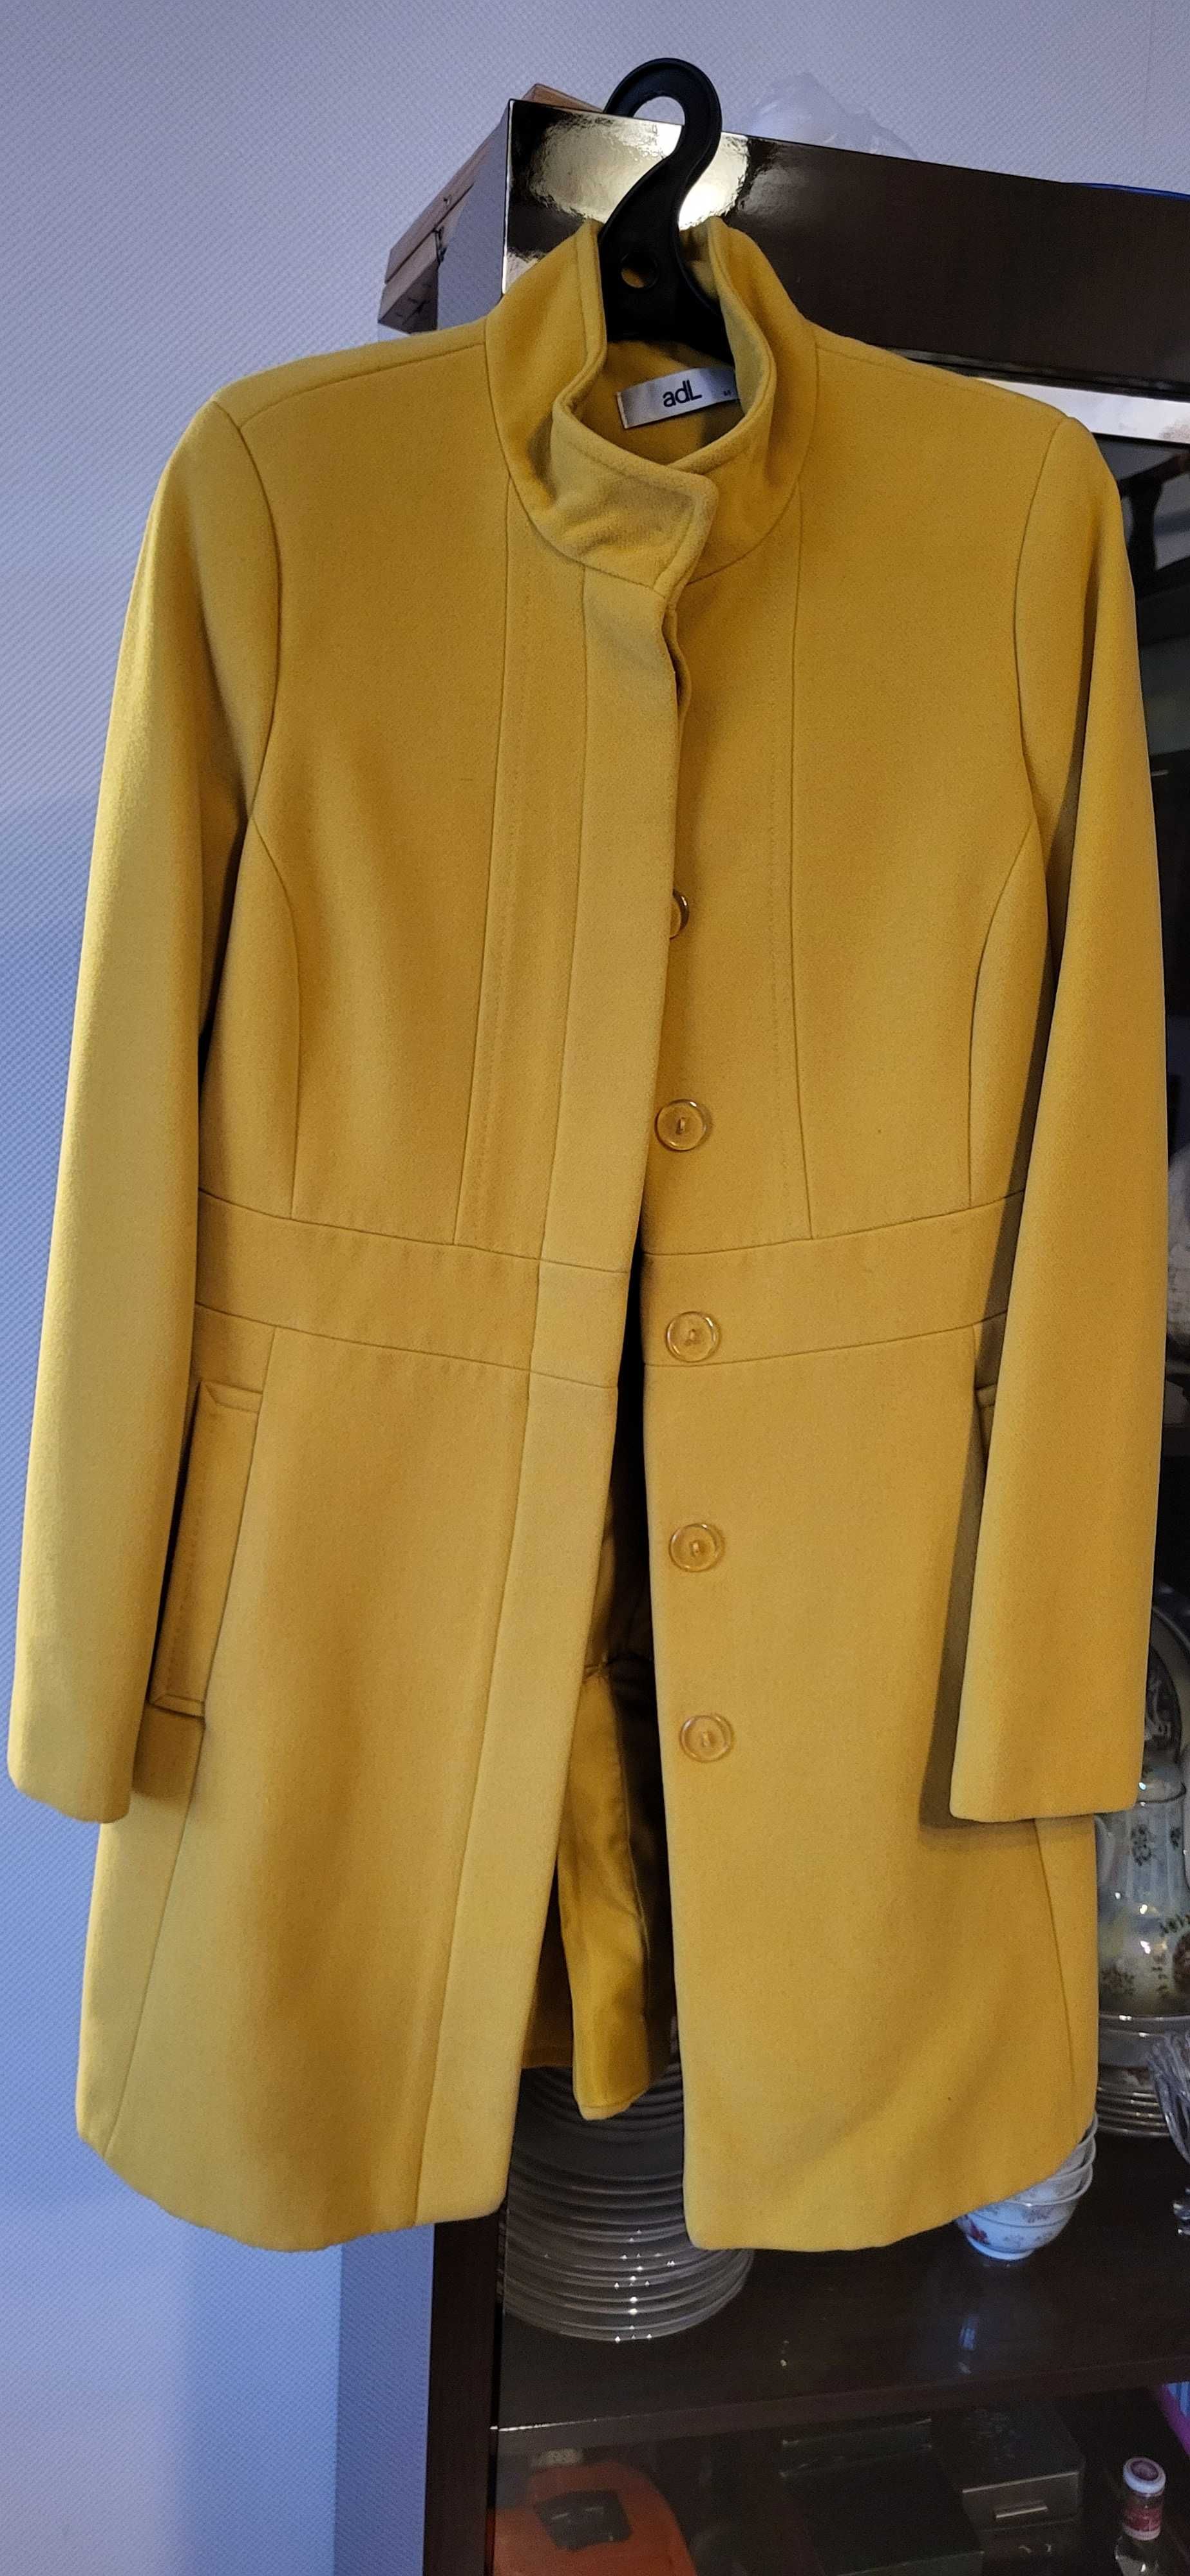 Пальто женское модель сюртука, с комфортным кроем, качество люкс.